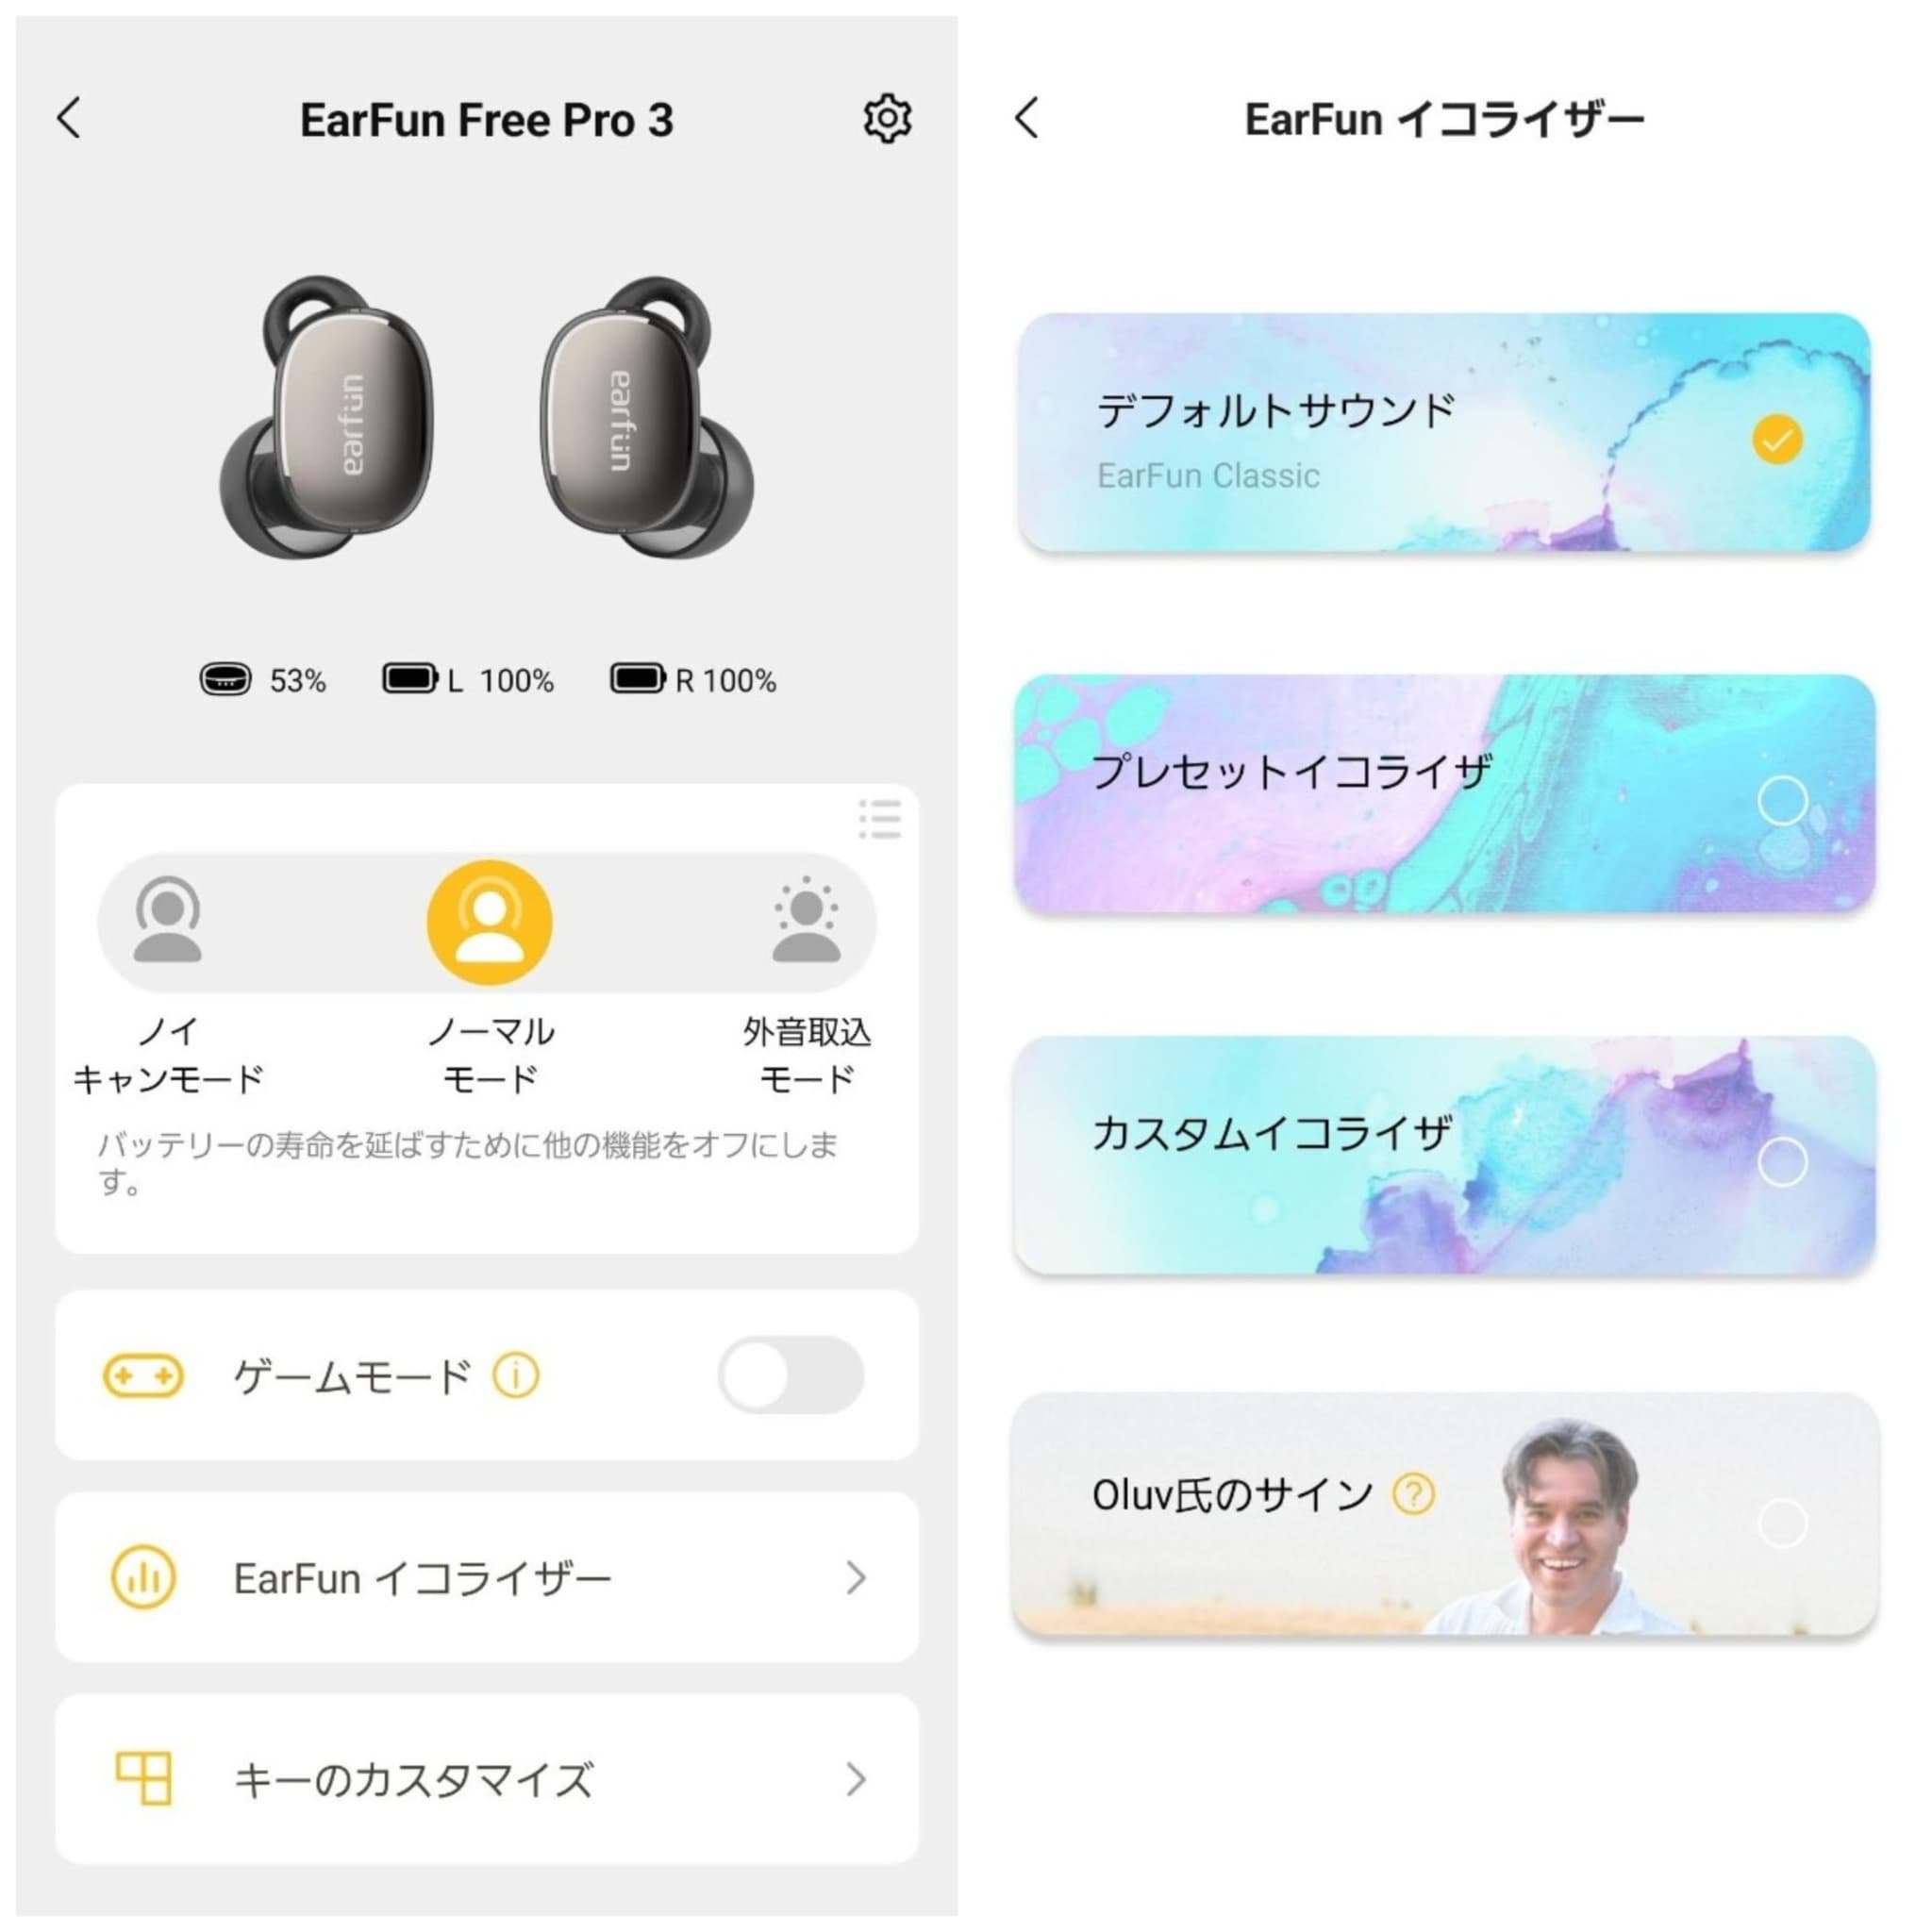 earfunアプリ